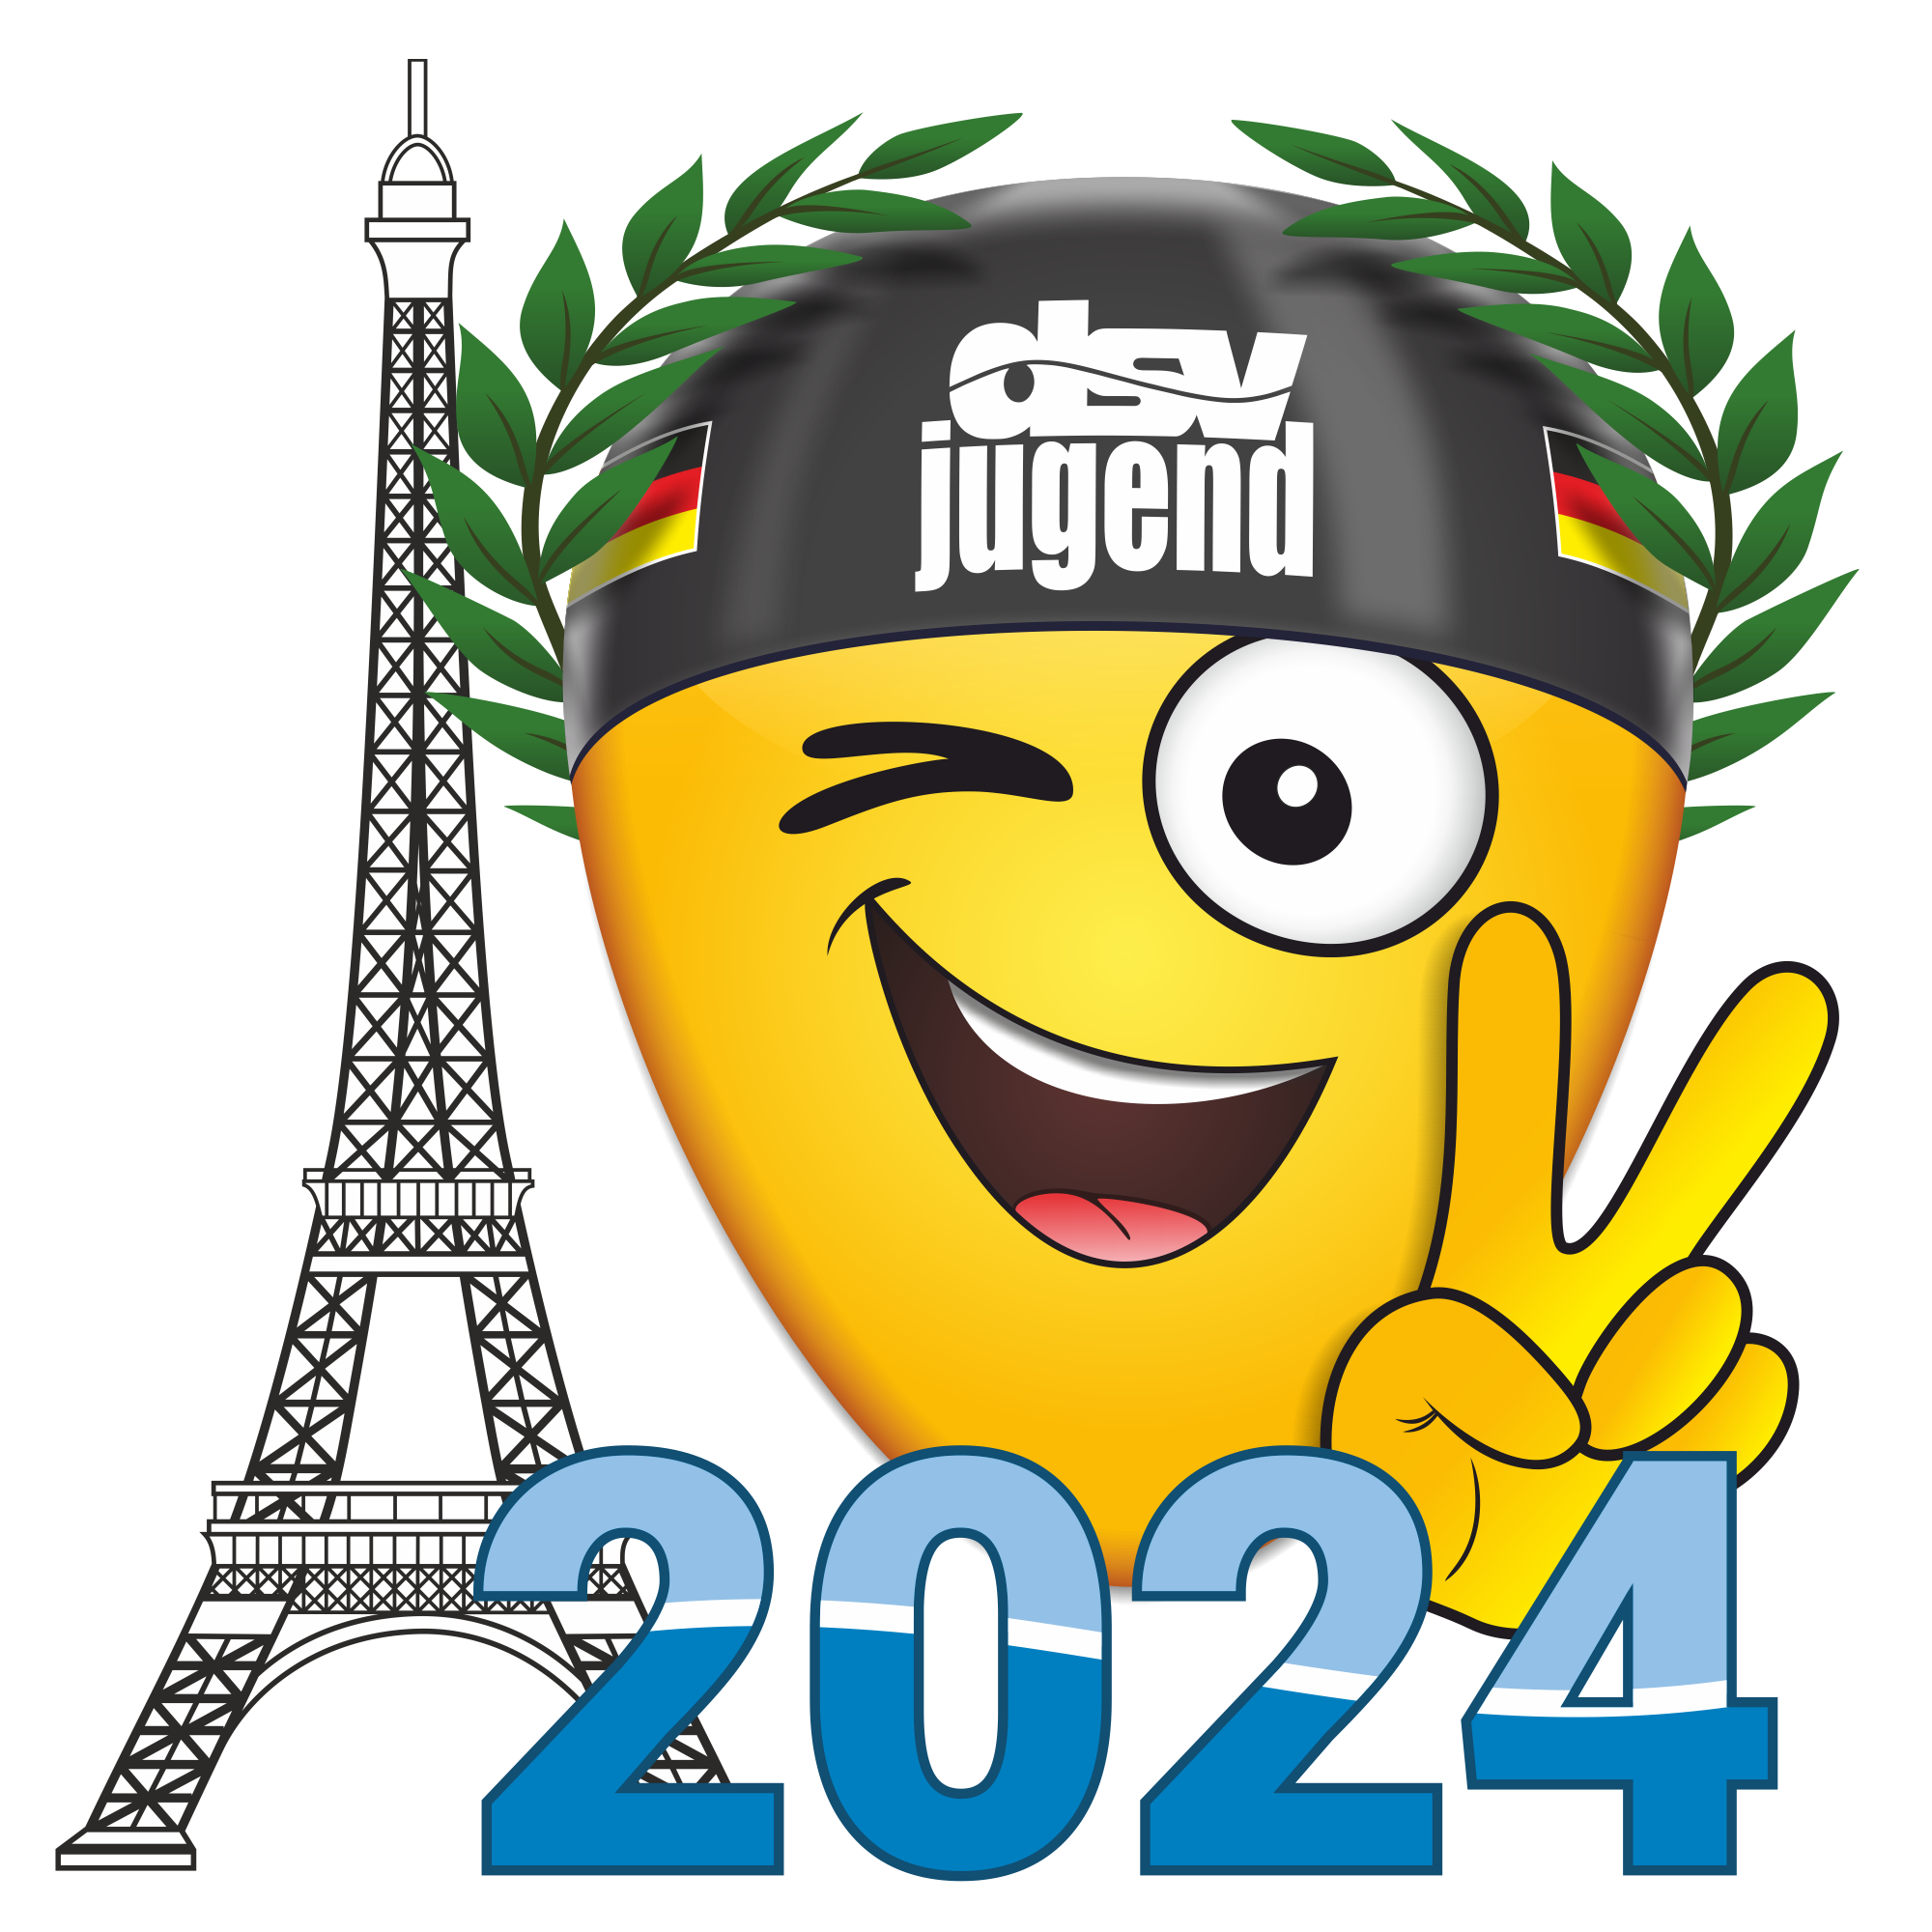 Ausschreibung für das Jugendlager zu den Olympischen Spielen 2024 in Paris